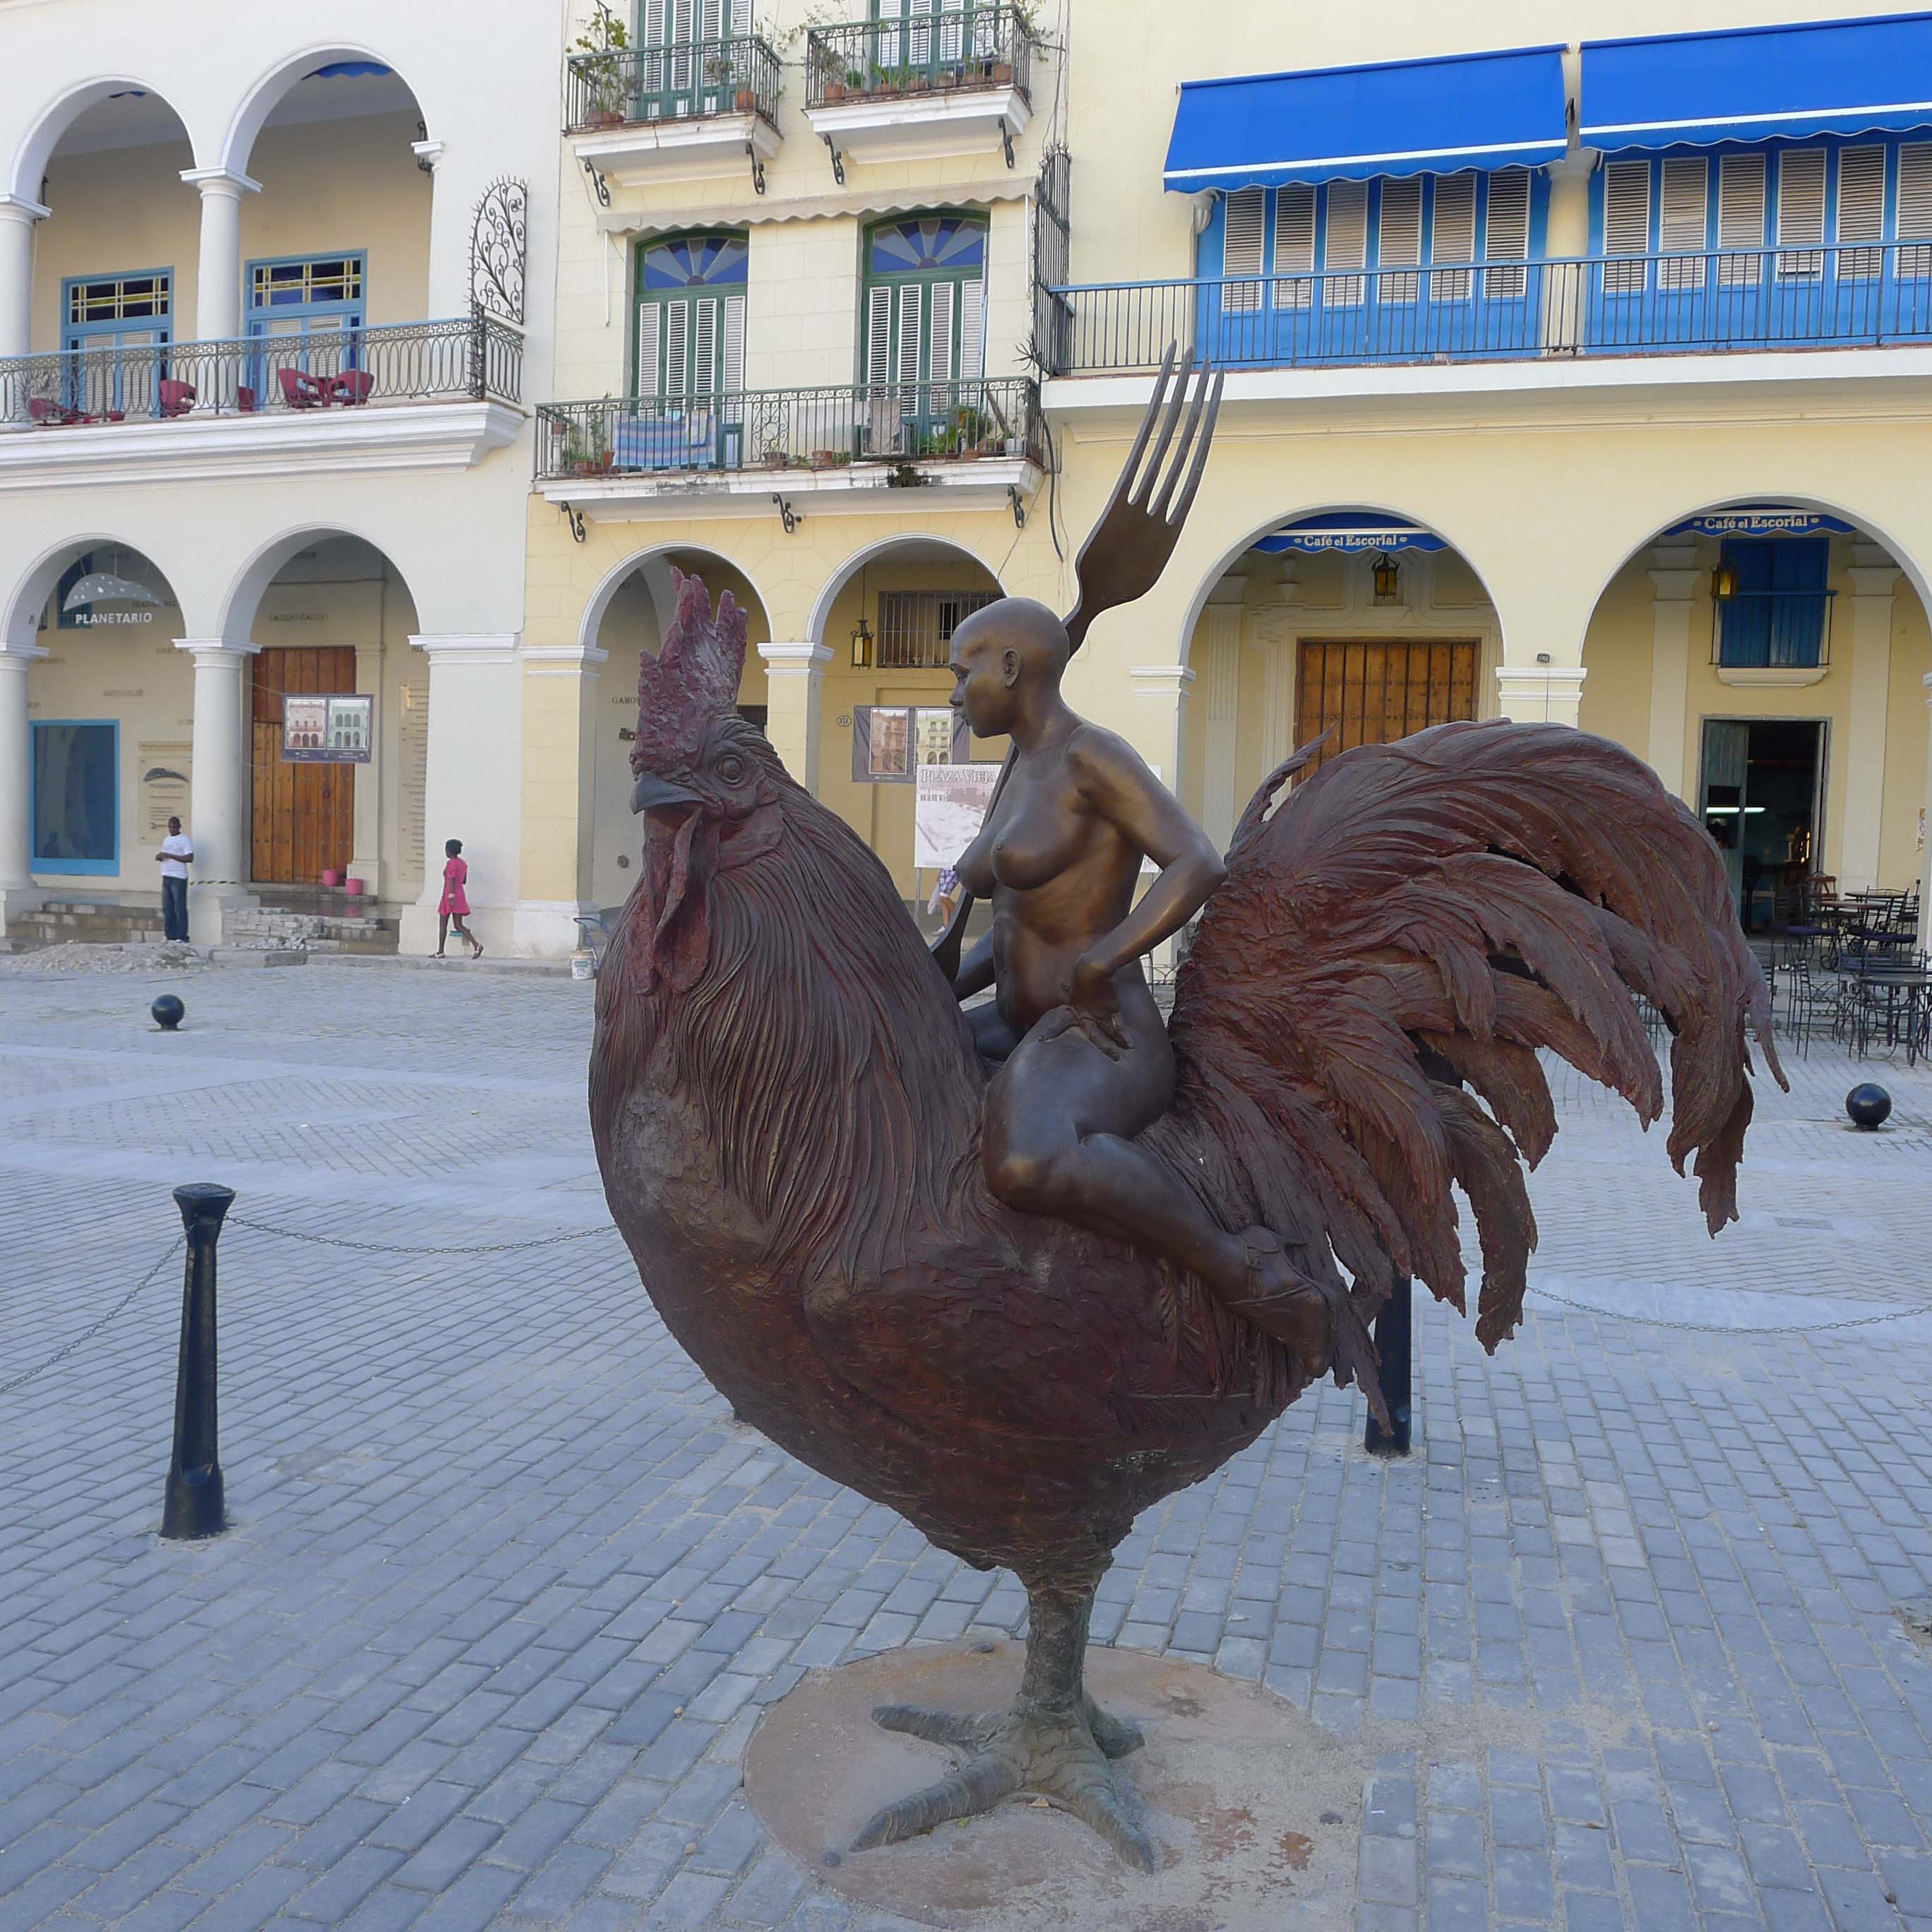 Sculptures in Havana, Cuba